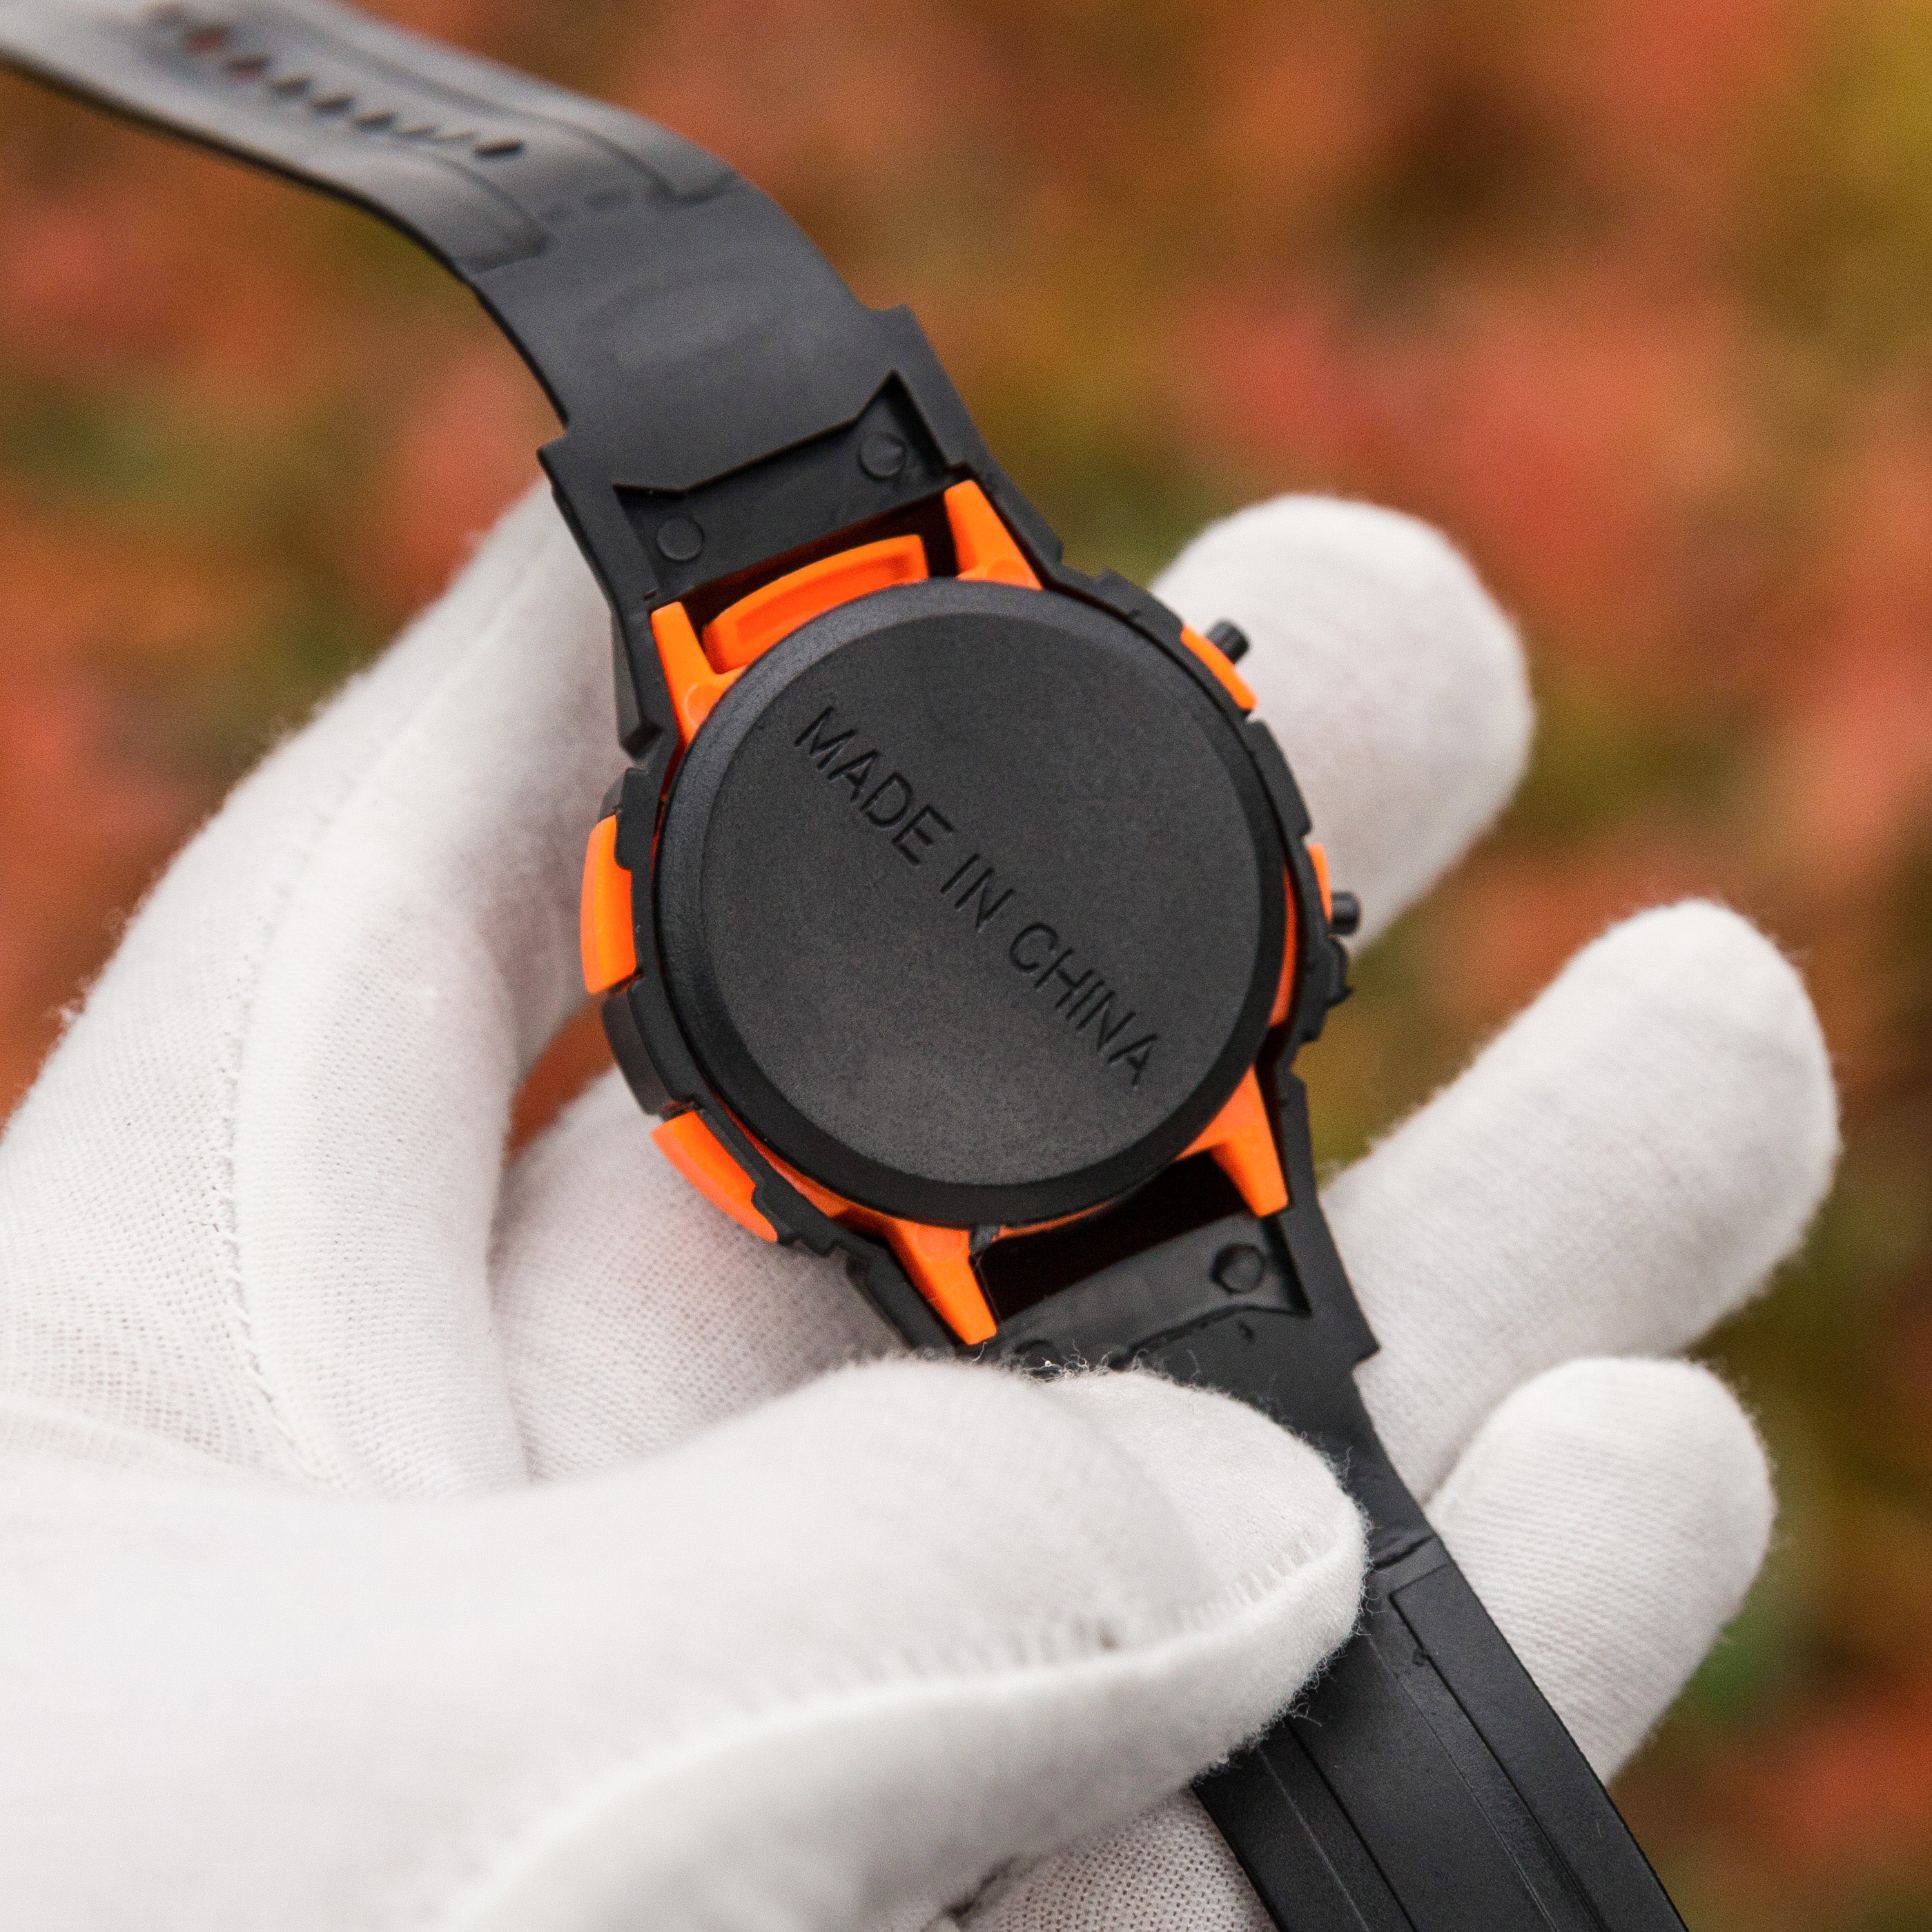 Đồng hồ điện tử UNISEX PAGINI WA03 - Thiết kế phong cách thể thao năng động – Ký ức tuổi thơ